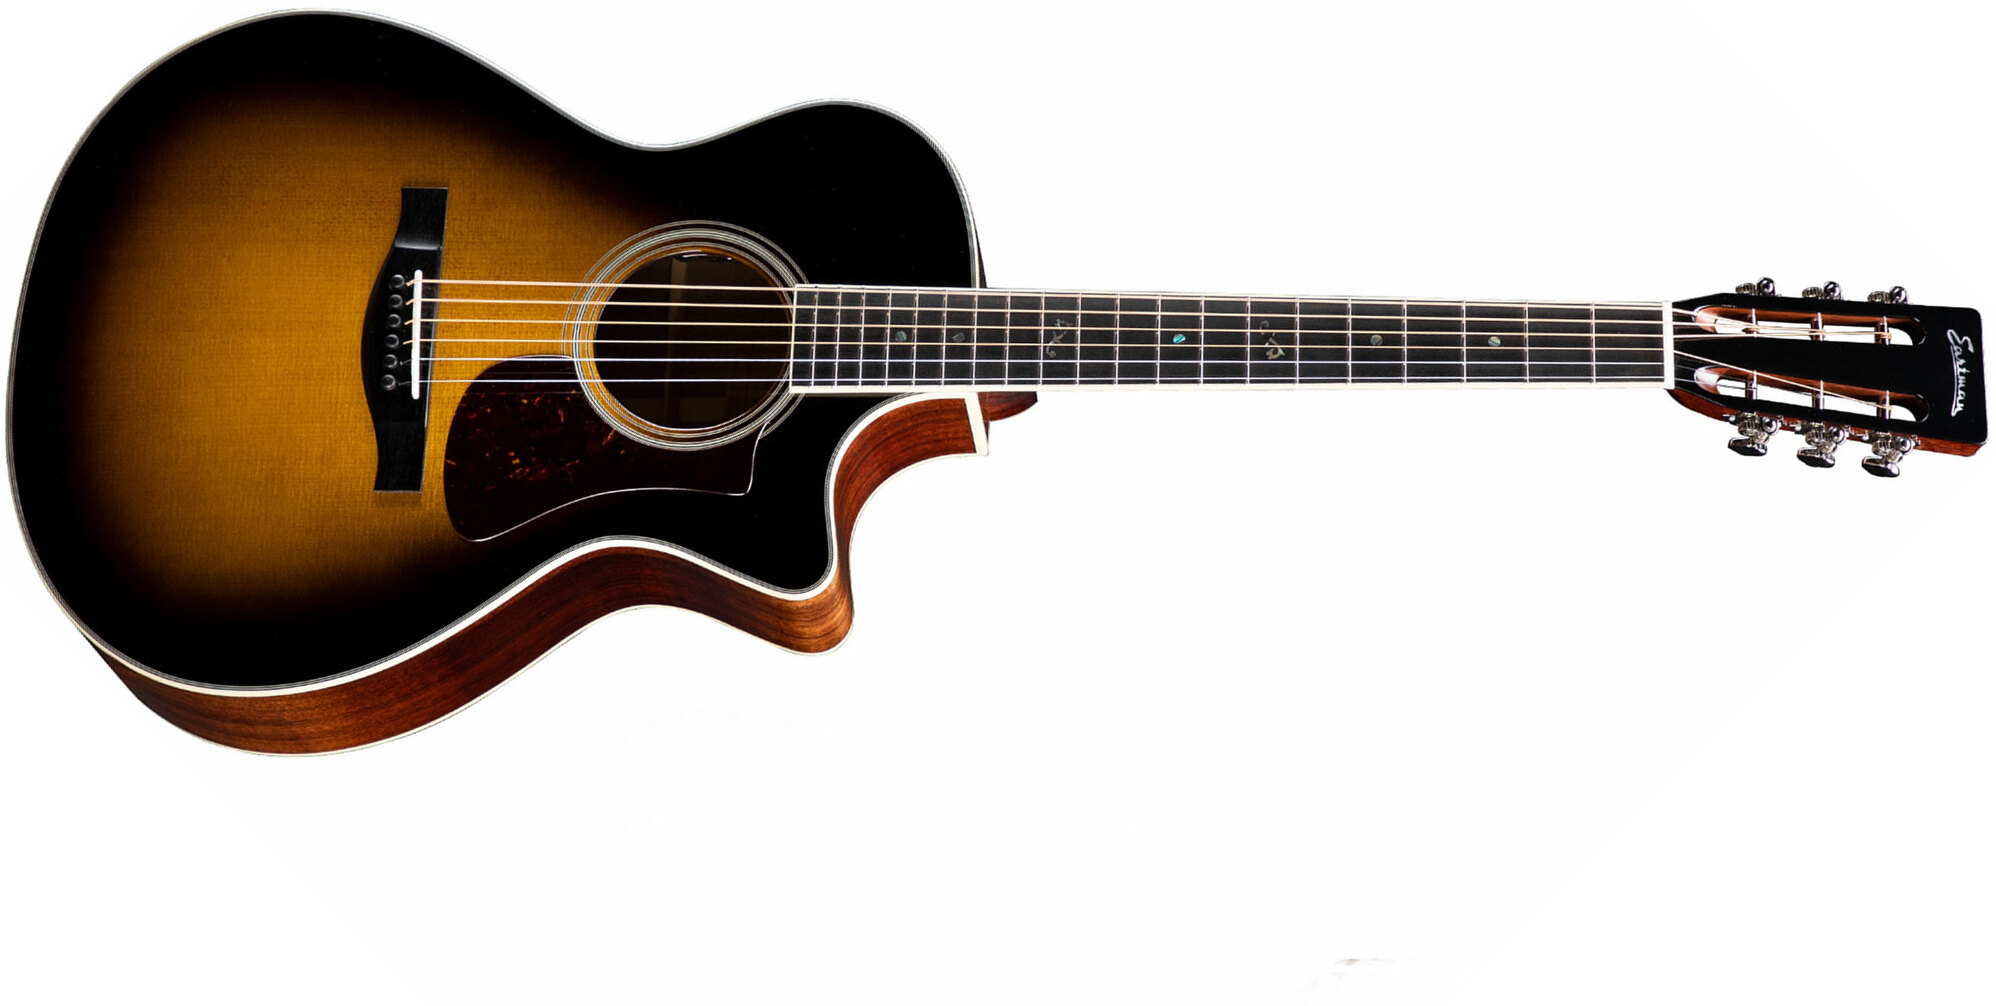 Eastman Ac308ce Ltd Grand Auditorium Cw Epicea Acajou Eb - Sunburst - Electro acoustic guitar - Main picture